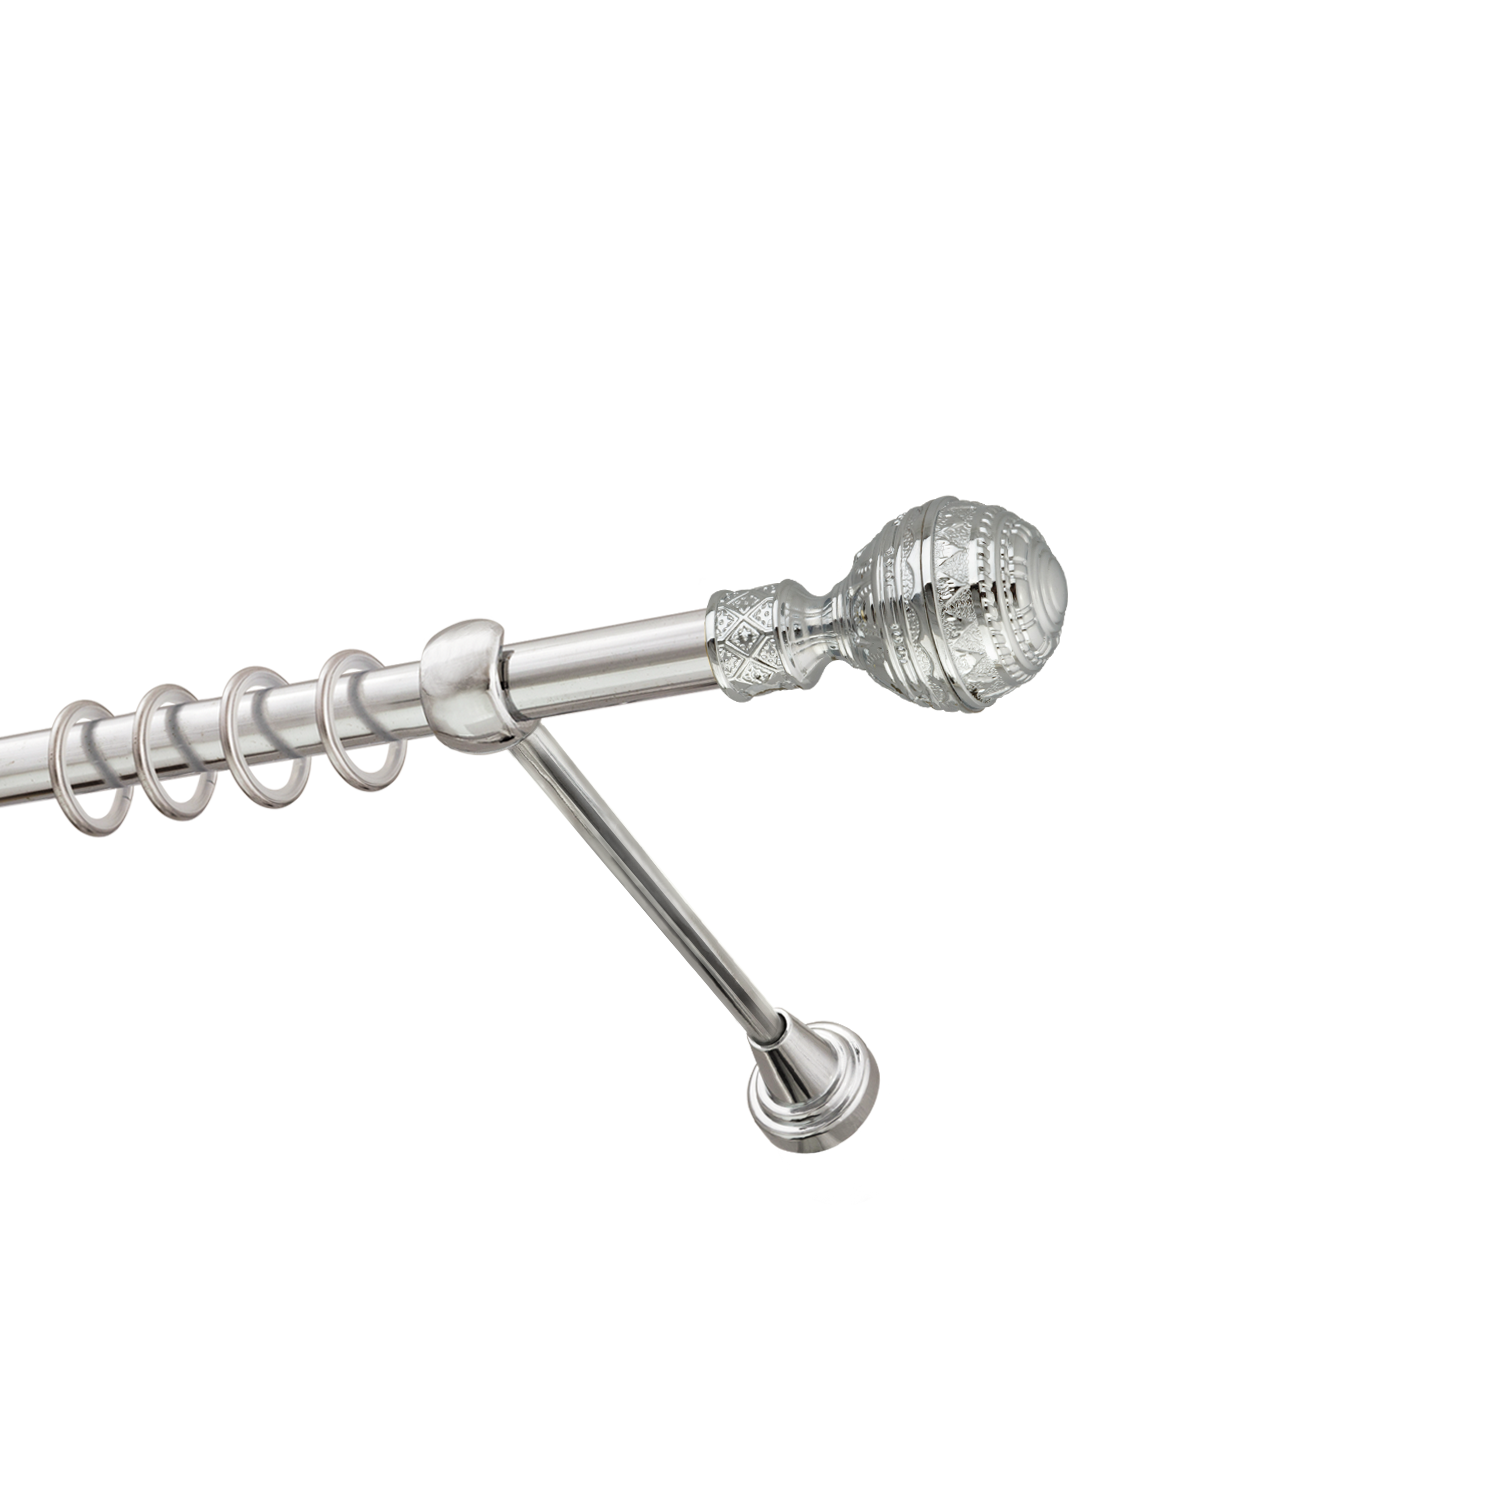 Металлический карниз для штор Роял, однорядный 16 мм, серебро, гладкая штанга, длина 200 см - фото Wikidecor.ru